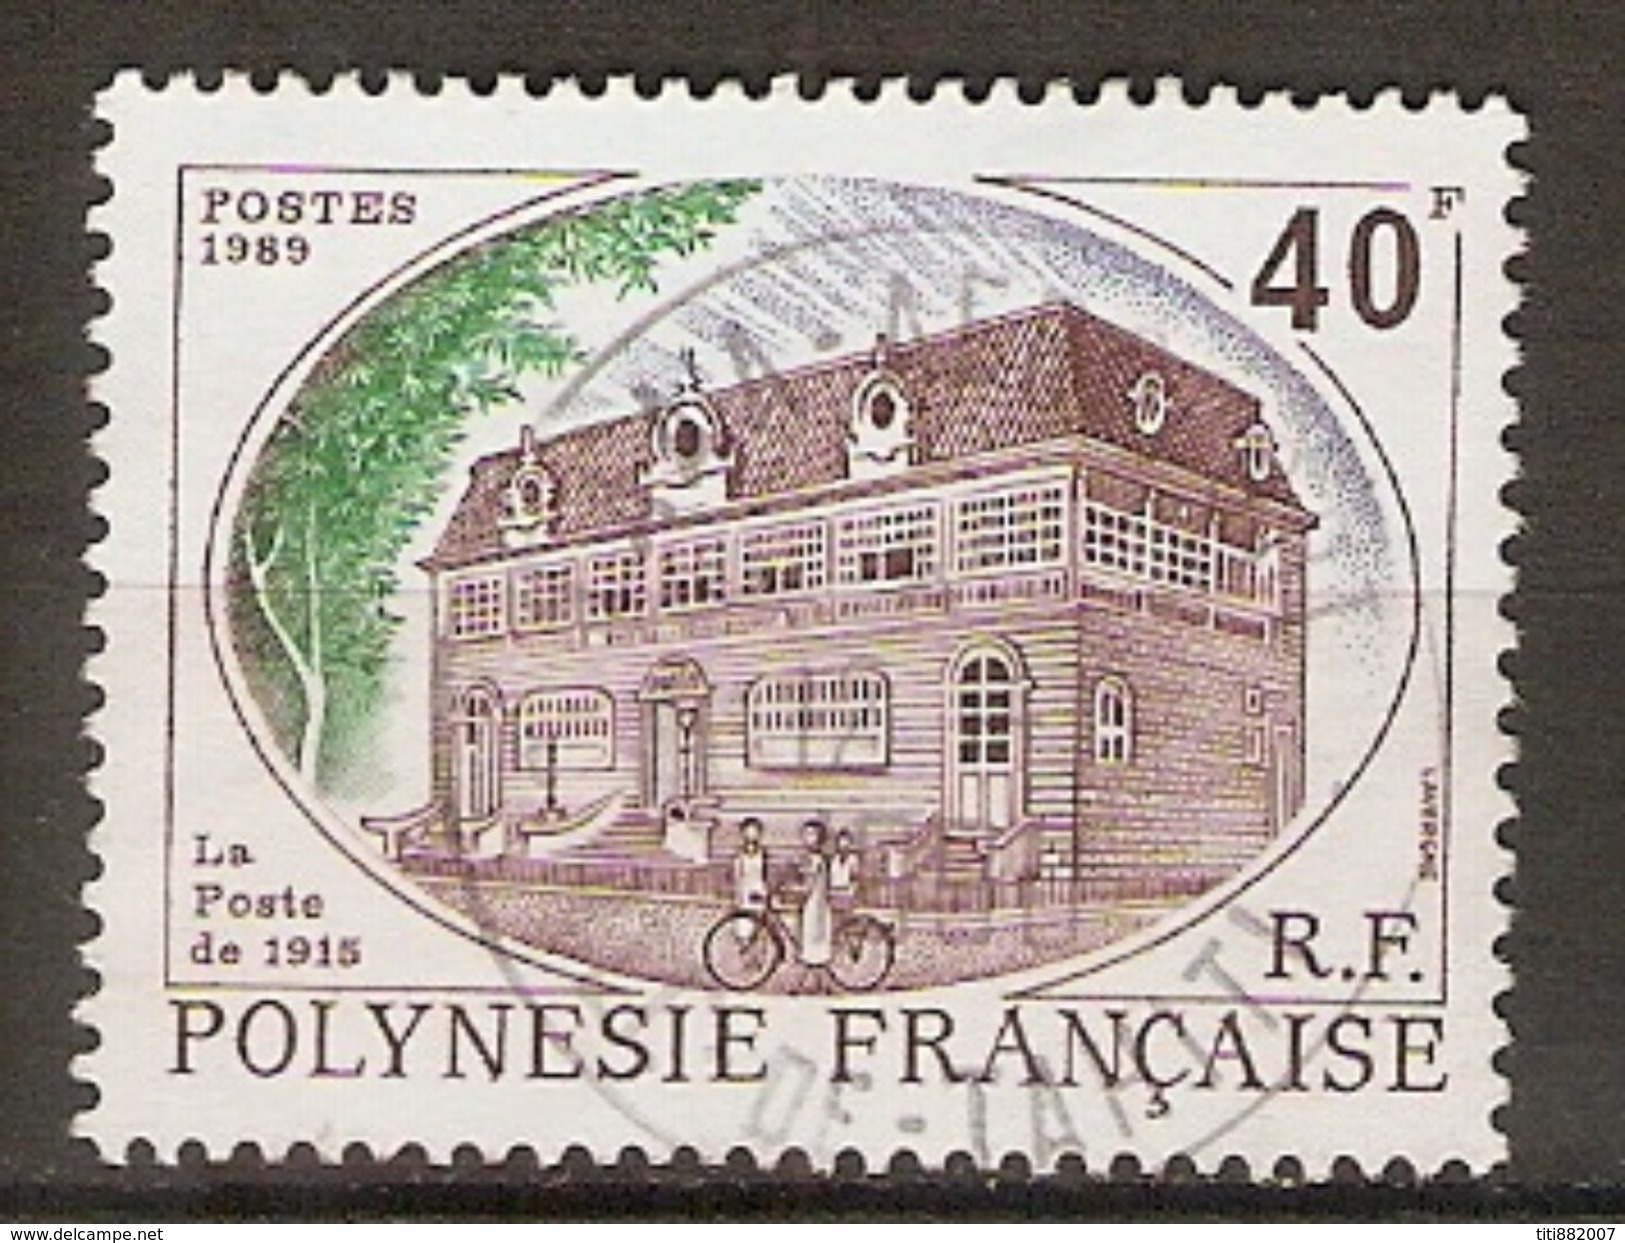 POLYNESIE  Française    -  1988 .  Y&T N° 323 Oblitéré .  La Poste De 1915. - Oblitérés